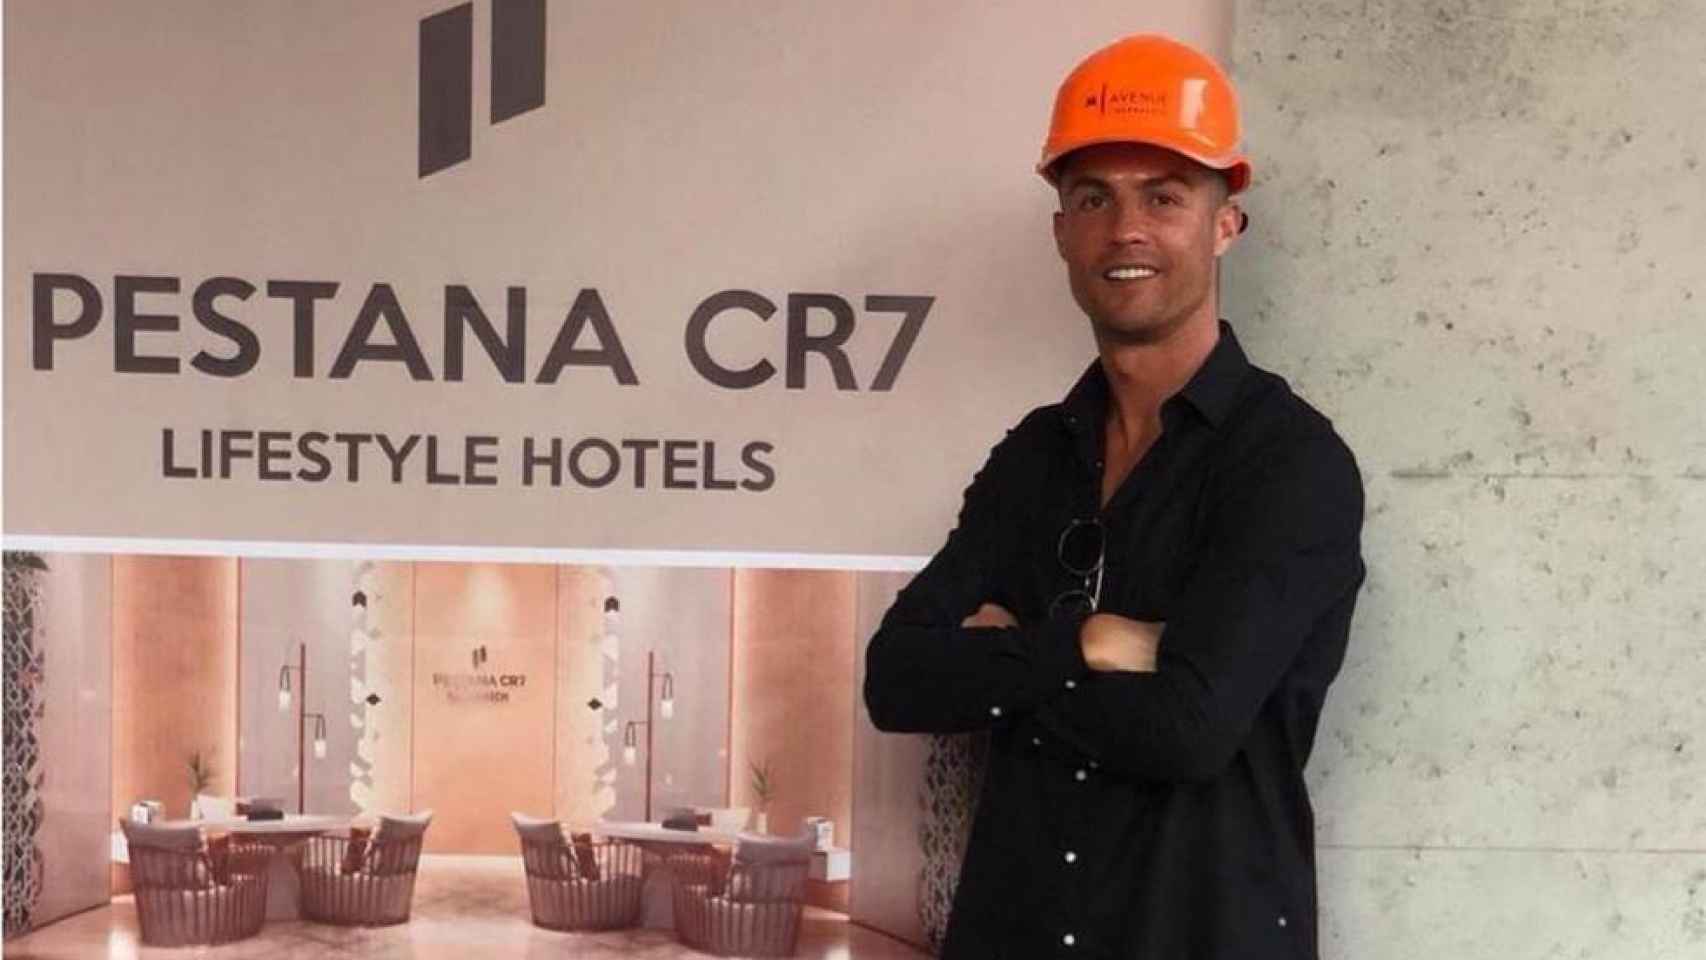 El jugador Cristiano Ronaldo, en uno de sus hoteles Pestana CR7